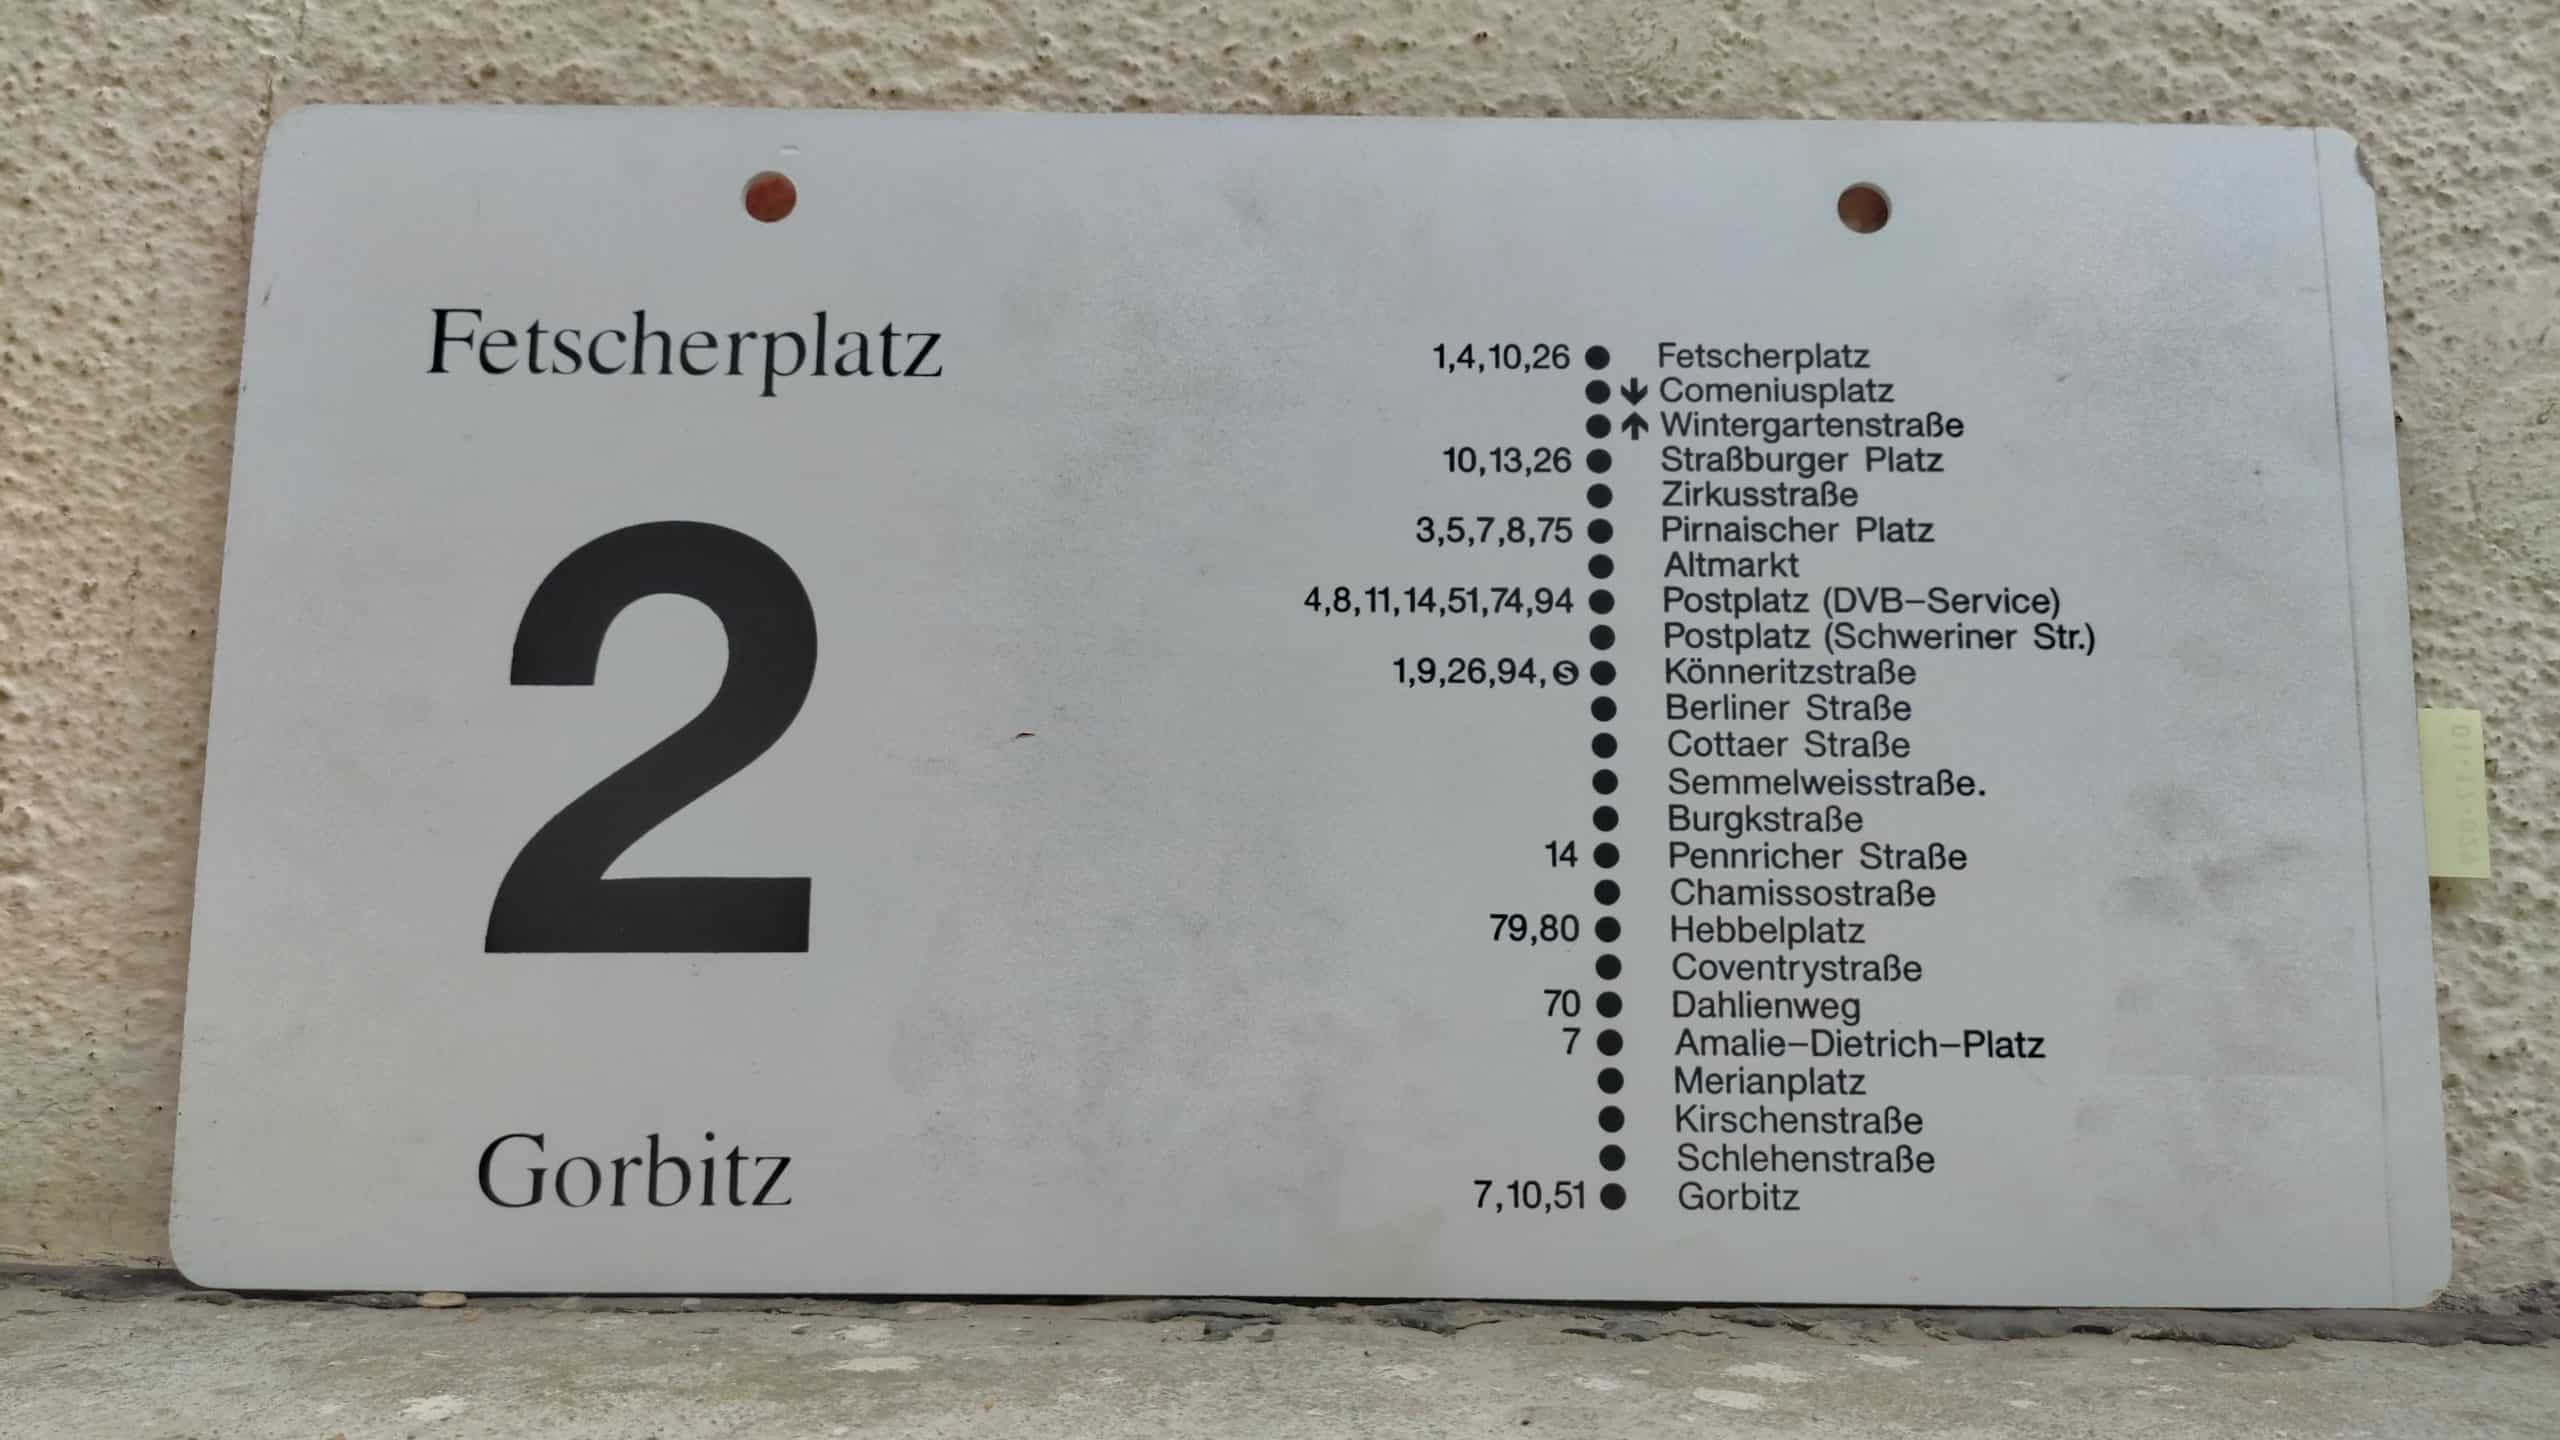 2 Fetscherplatz – Gorbitz #2